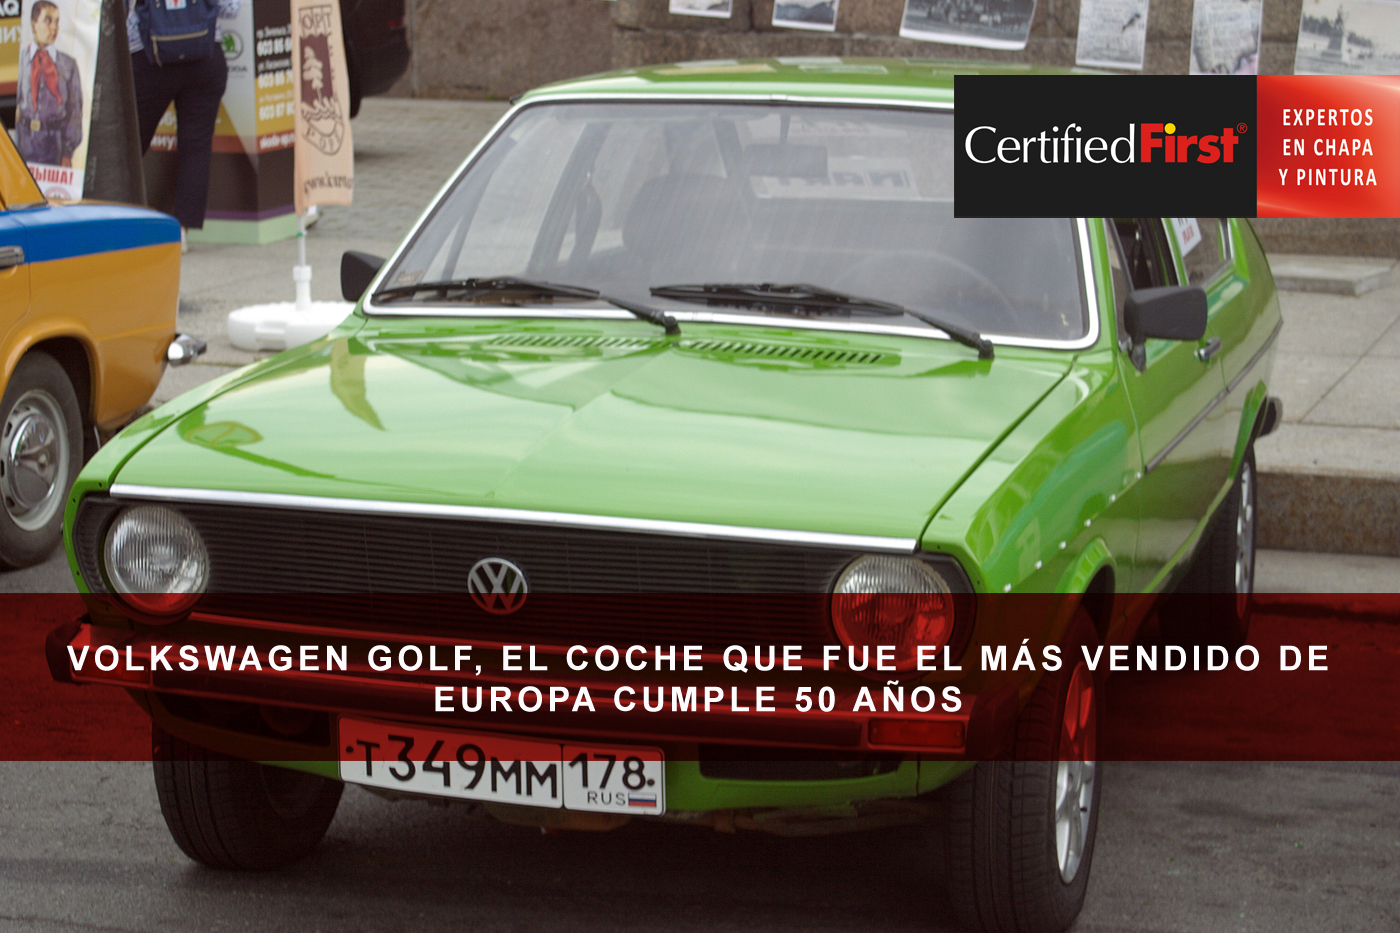 Volkswagen Golf, el coche que fue el más vendido de Europa cumple 50 años